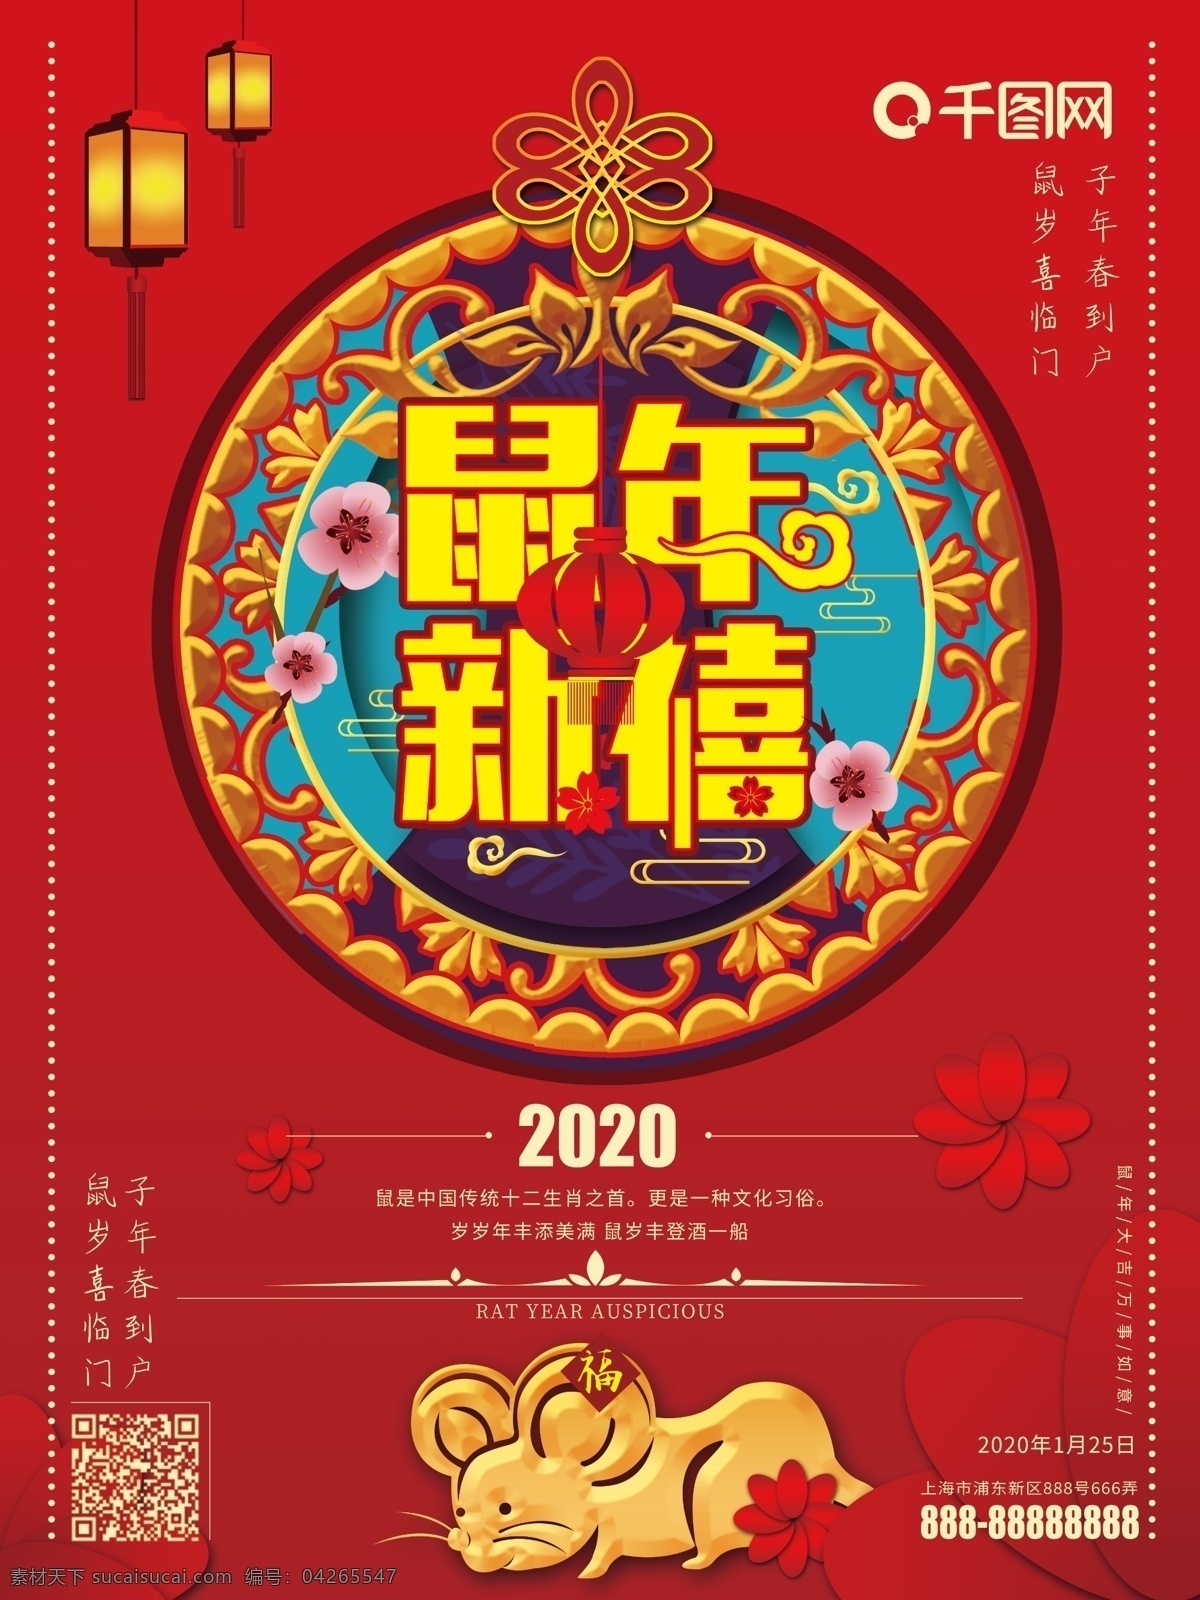 手绘 花纹 灯笼 鼠年 大气 经典 海报 精品 宣传画 春节海报 2020 年 新春 节日海报